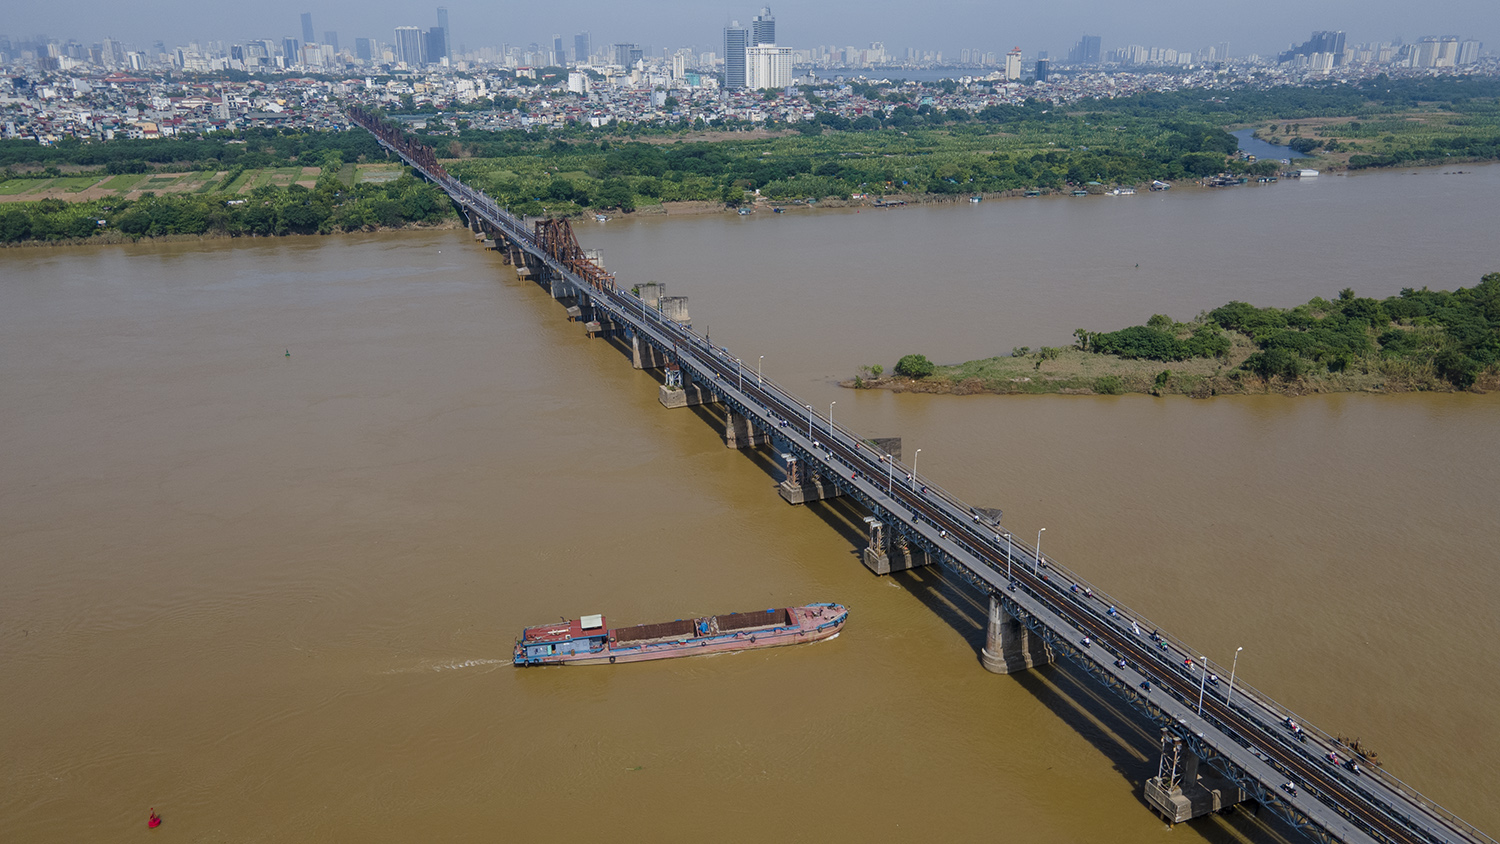 Trải qua 120 năm đưa vào sử dụng, hiện nhiều hạng mục trên cầu Long Biên đã xuống cấp nghiêm trọng. Thế nhưng, mỗi ngày chiếc cầu này vẫn "gánh" trên mình hàng chục nghìn lượt phương tiện qua lại.